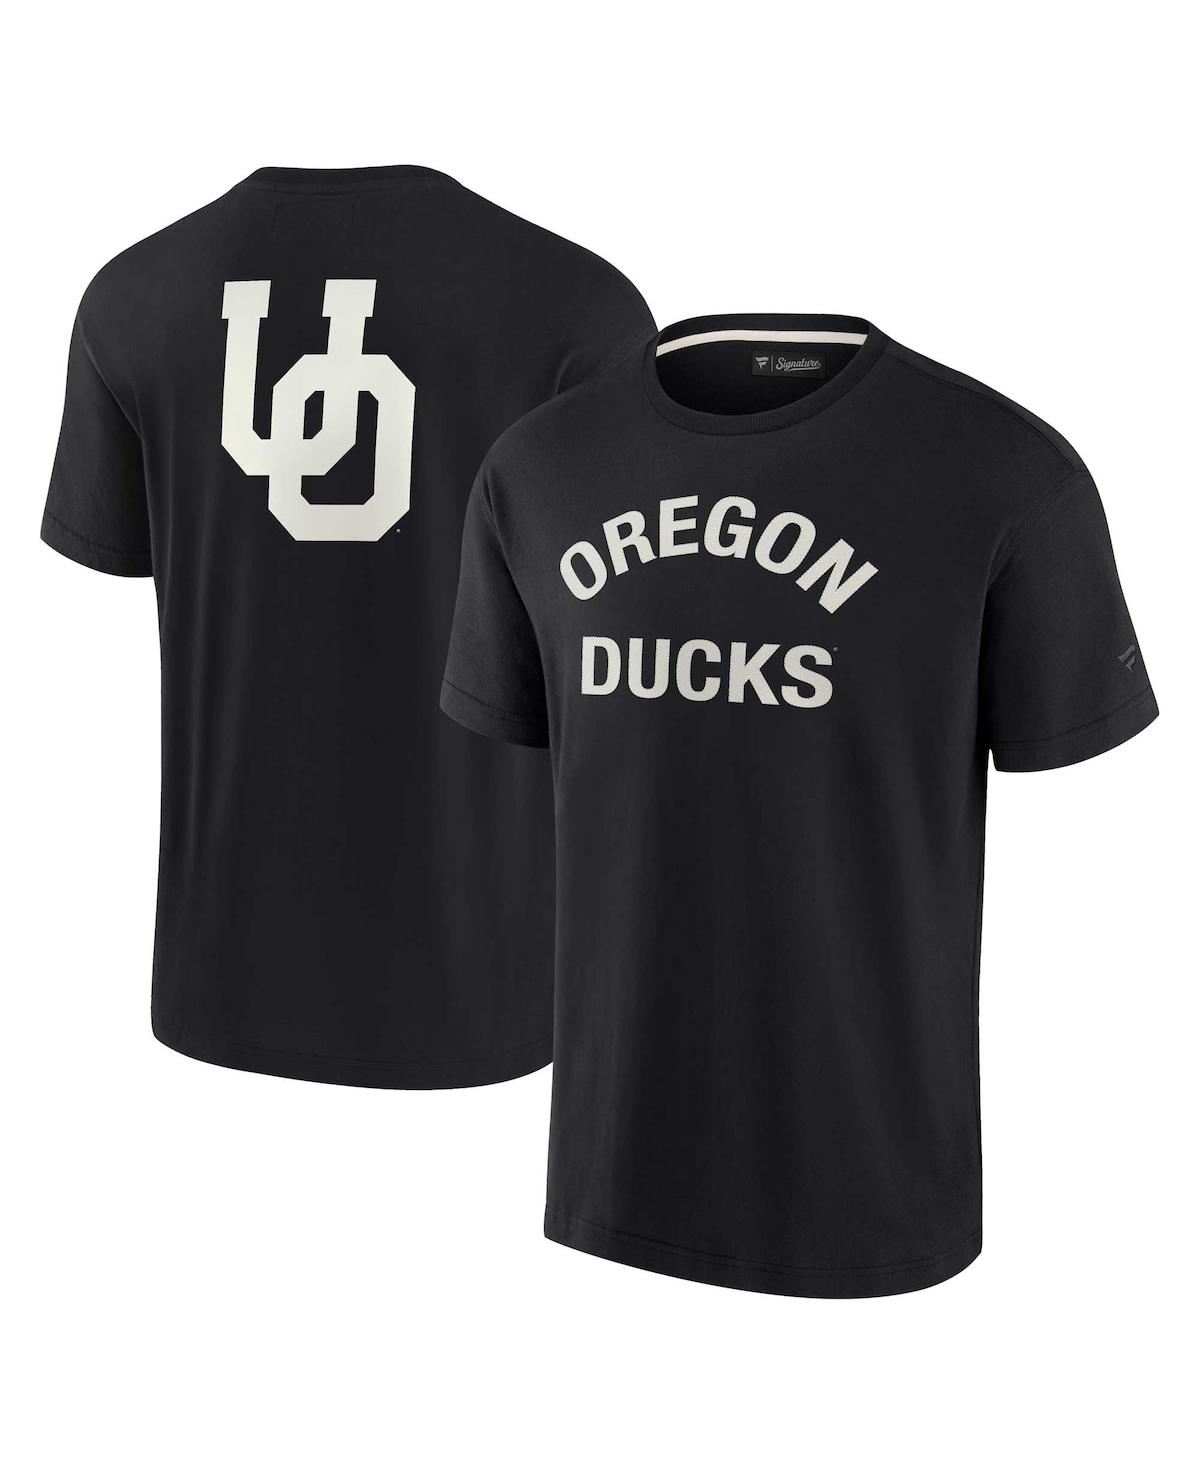 Fanatics Signature Men's And Women's  Black Oregon Ducks Super Soft Short Sleeve T-shirt